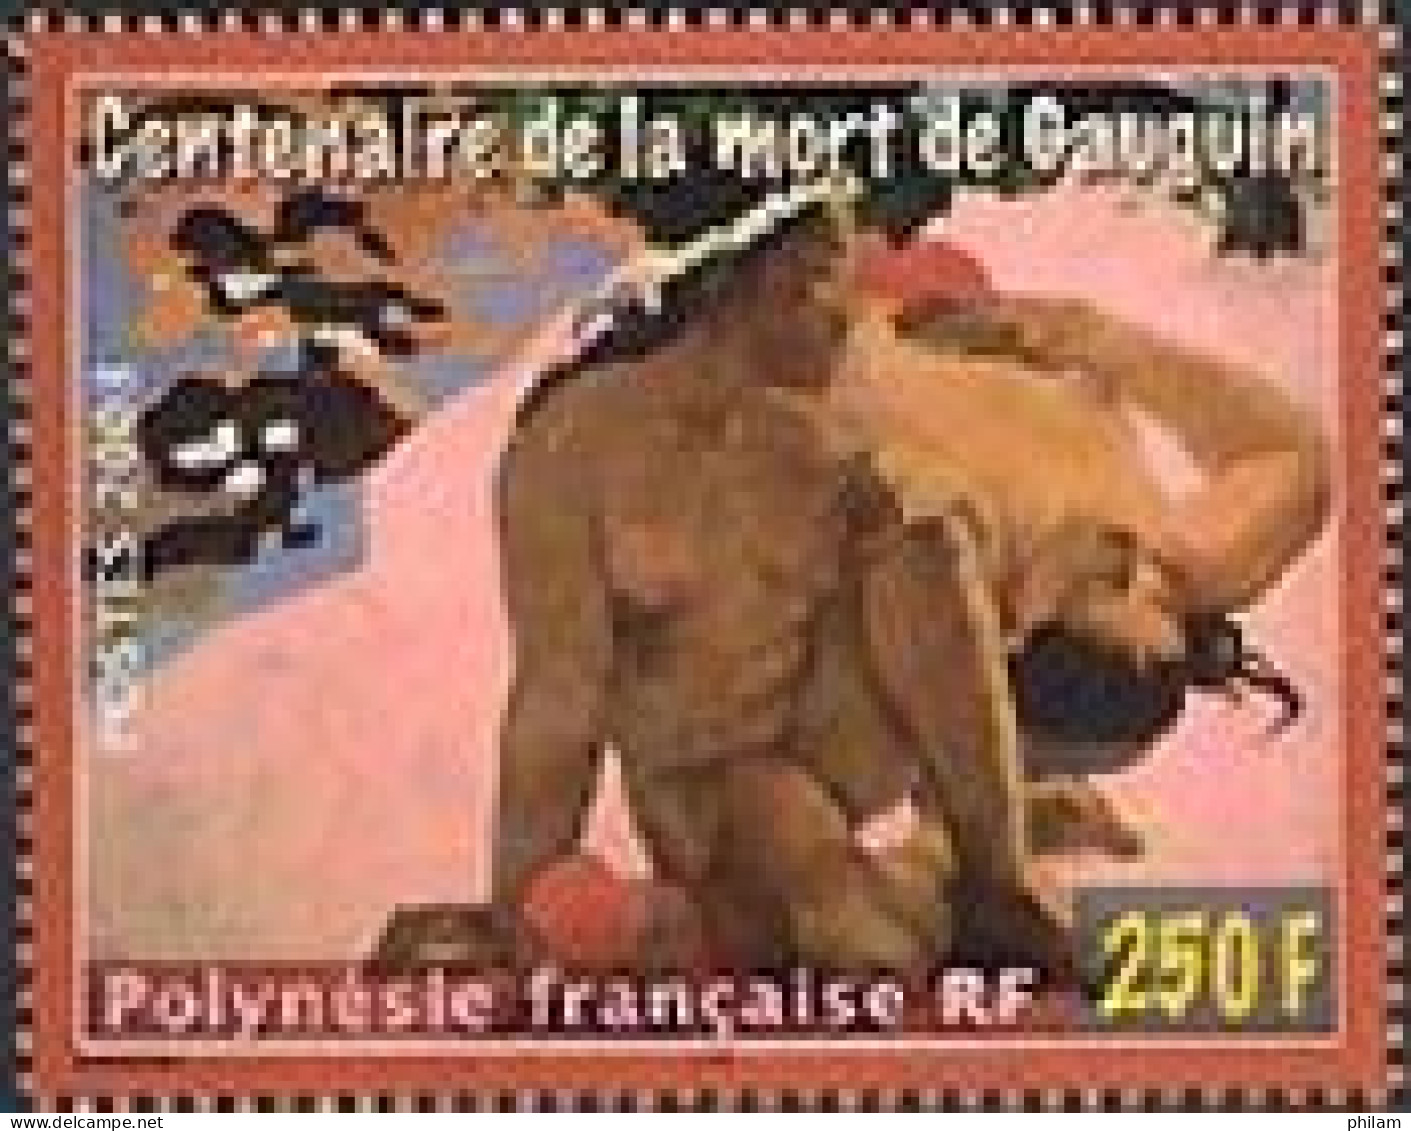 POLYNESIE 2003 - Centenaire De La Mort De Gauguin - 1 V. - Neufs